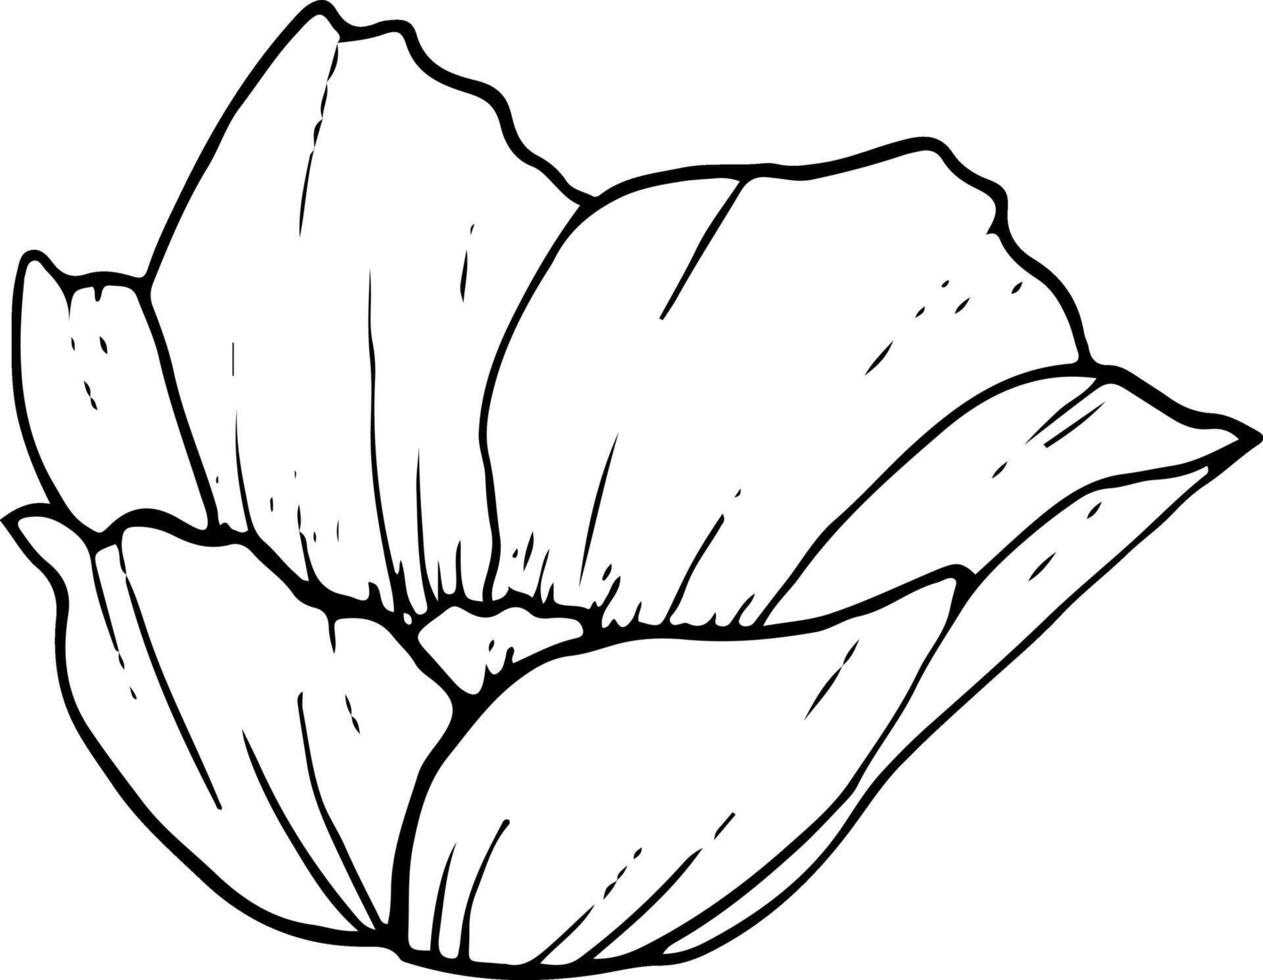 veld- anemoon zwart en wit grafisch illustratie. voorjaar bloem voor kleur Pagina's, groet kaarten en bruiloft ontwerp vector